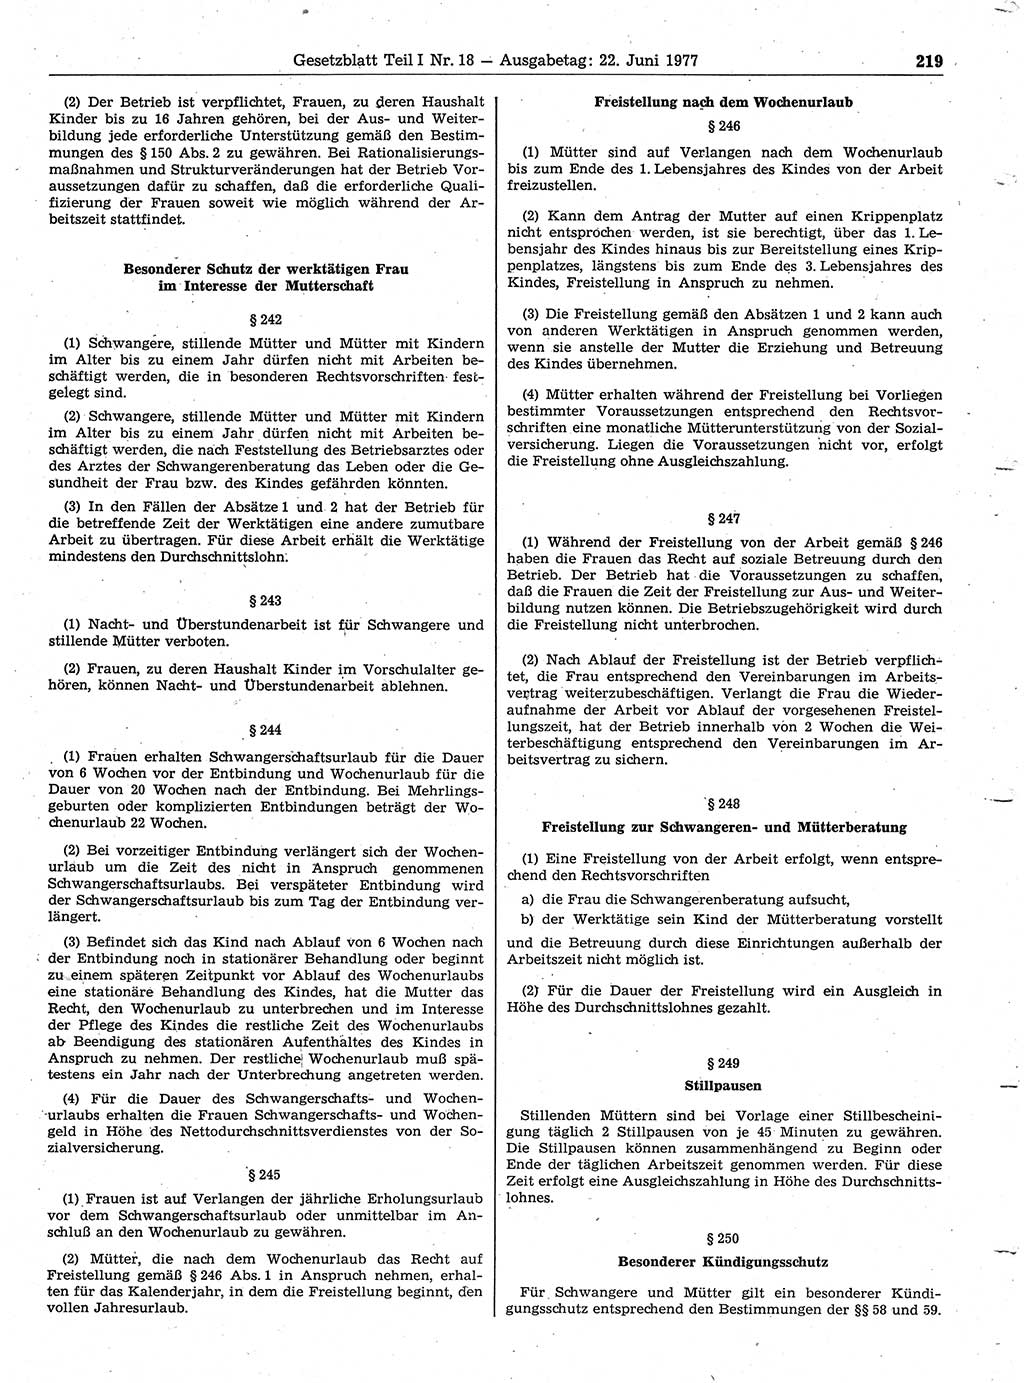 Gesetzblatt (GBl.) der Deutschen Demokratischen Republik (DDR) Teil Ⅰ 1977, Seite 219 (GBl. DDR Ⅰ 1977, S. 219)